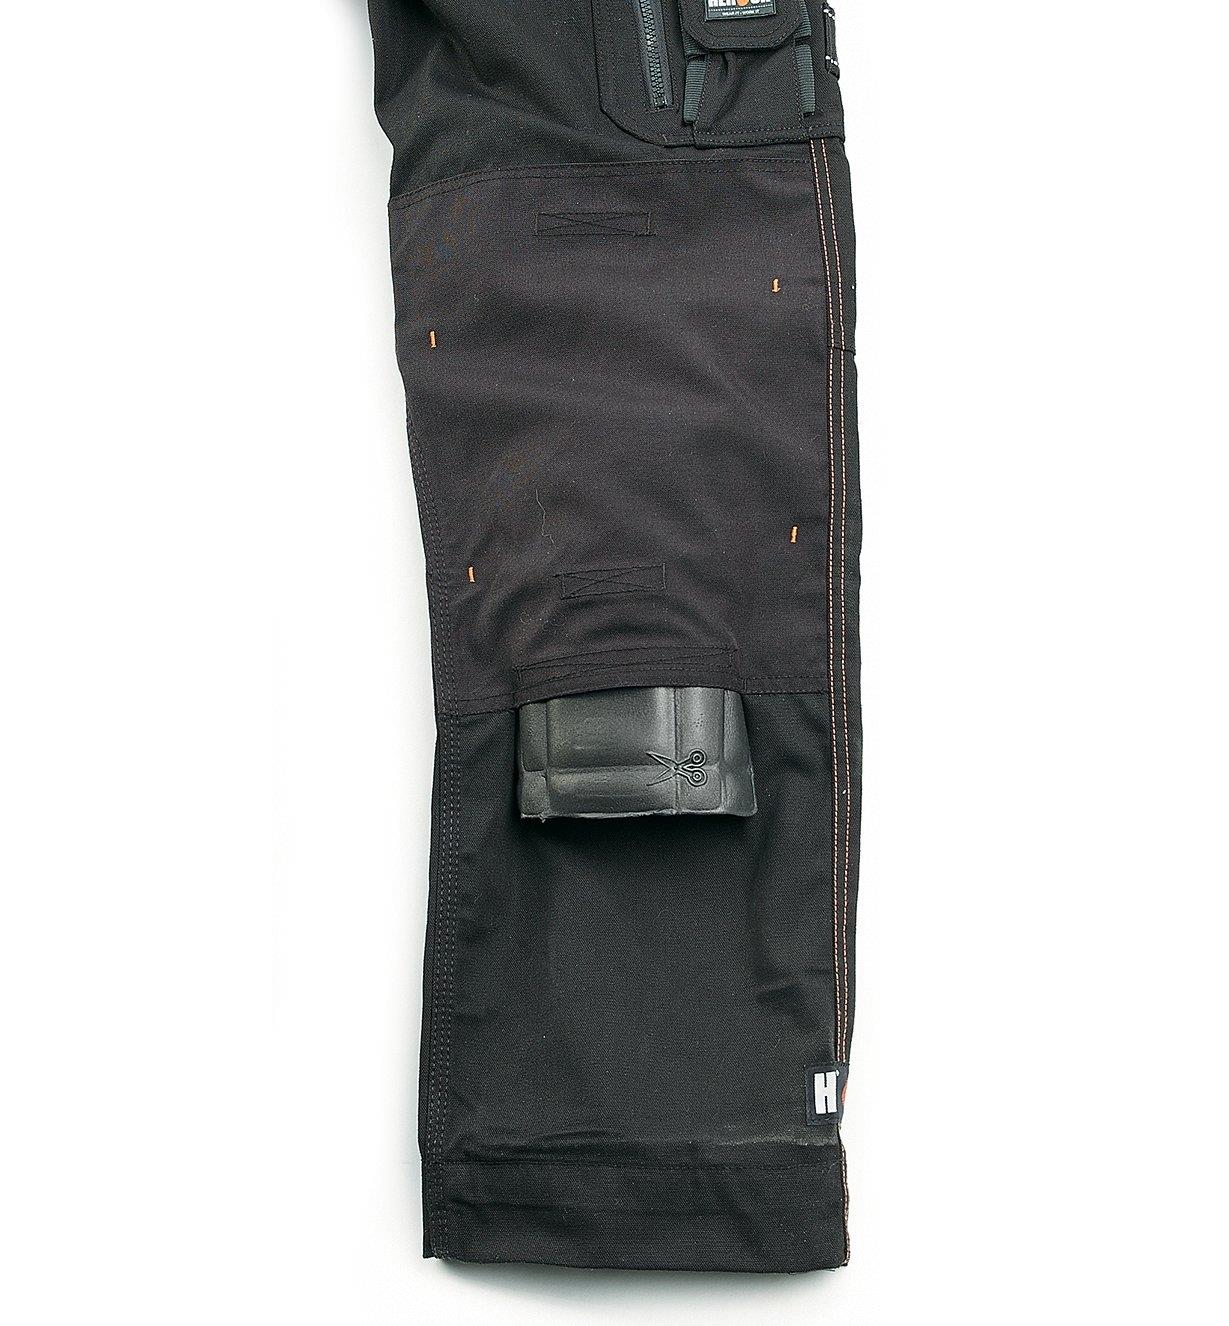 Close-up of knee pad pocket on black pants